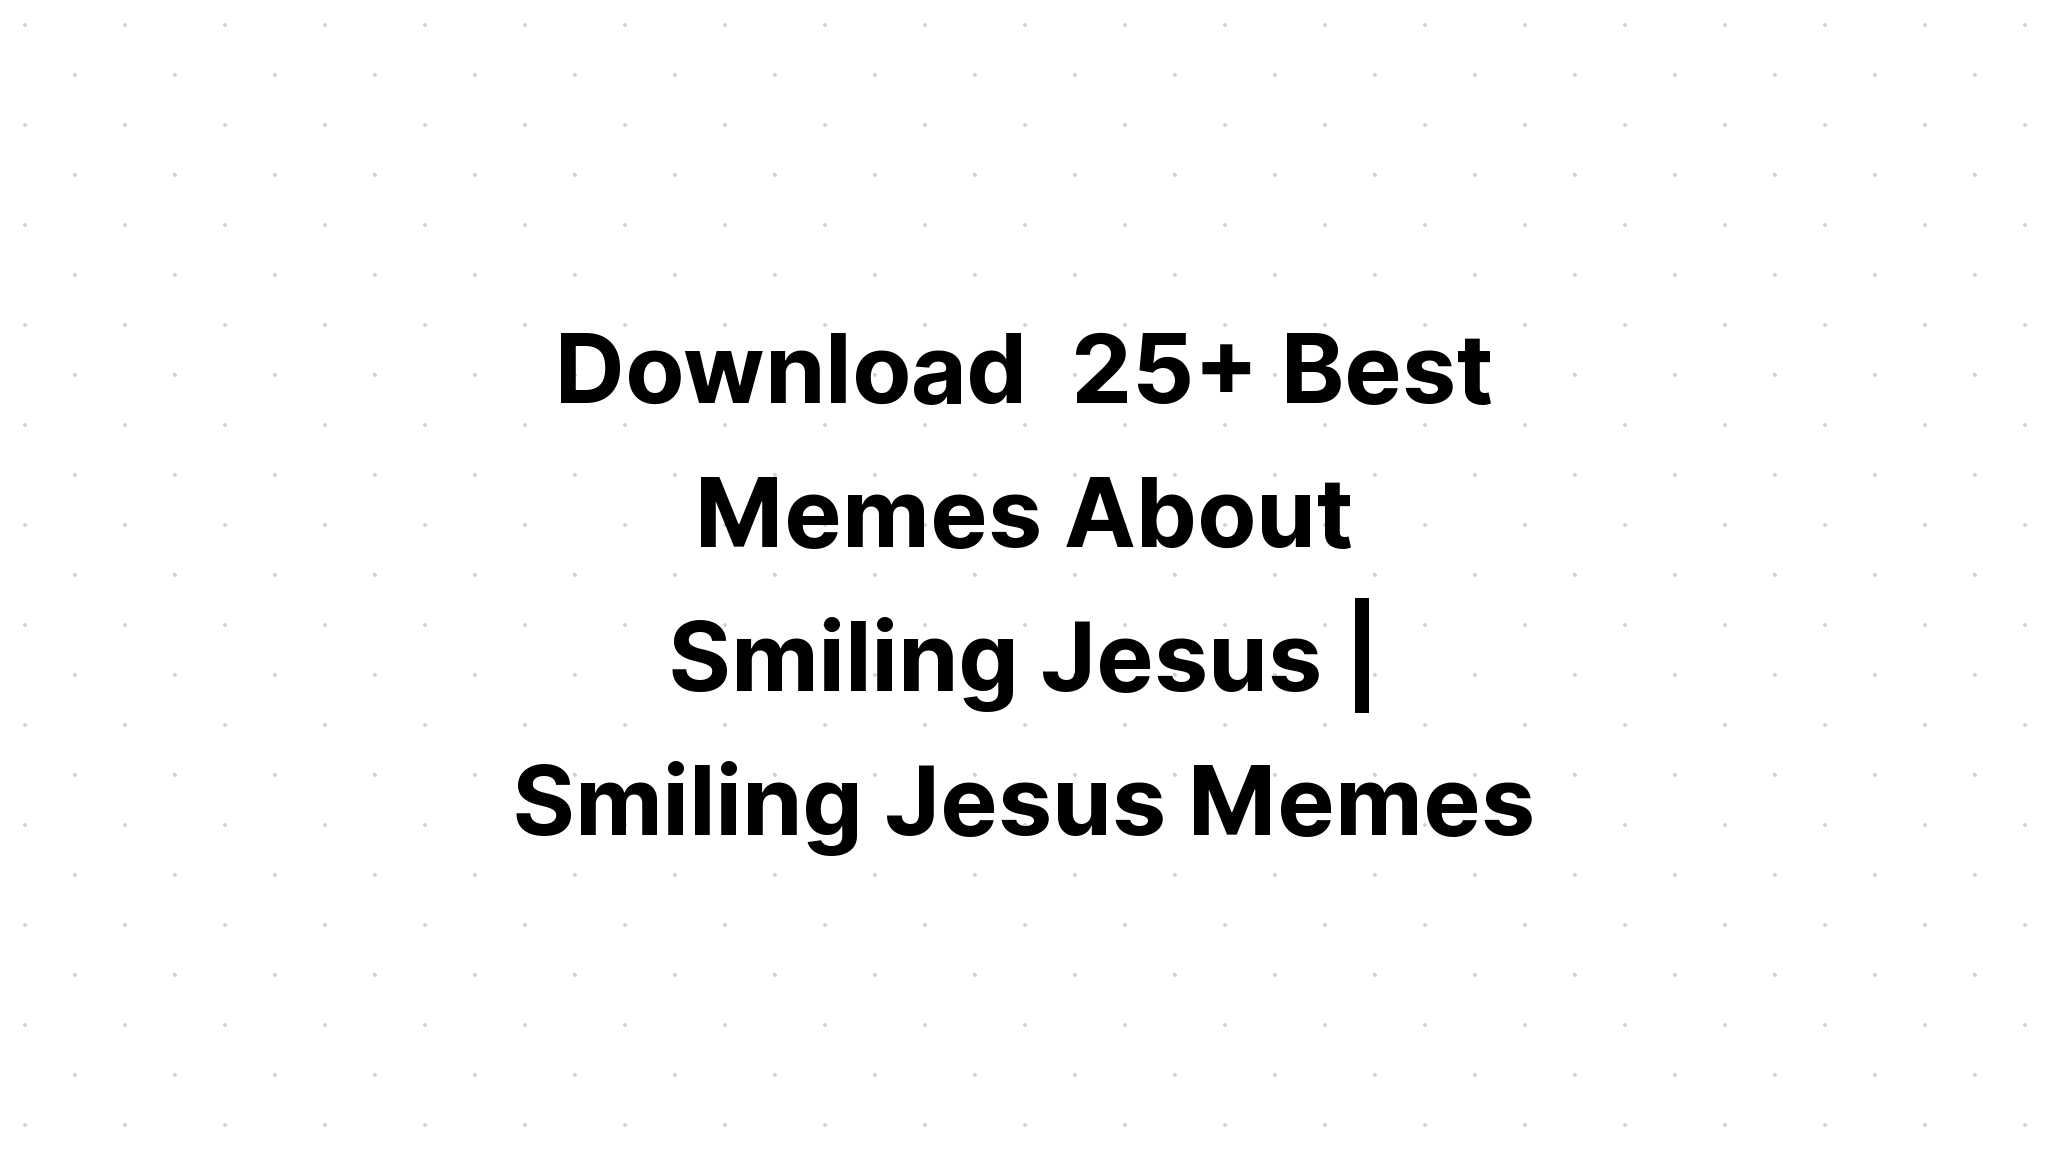 Download Smile Jesus Loves You Christian Loves SVG File